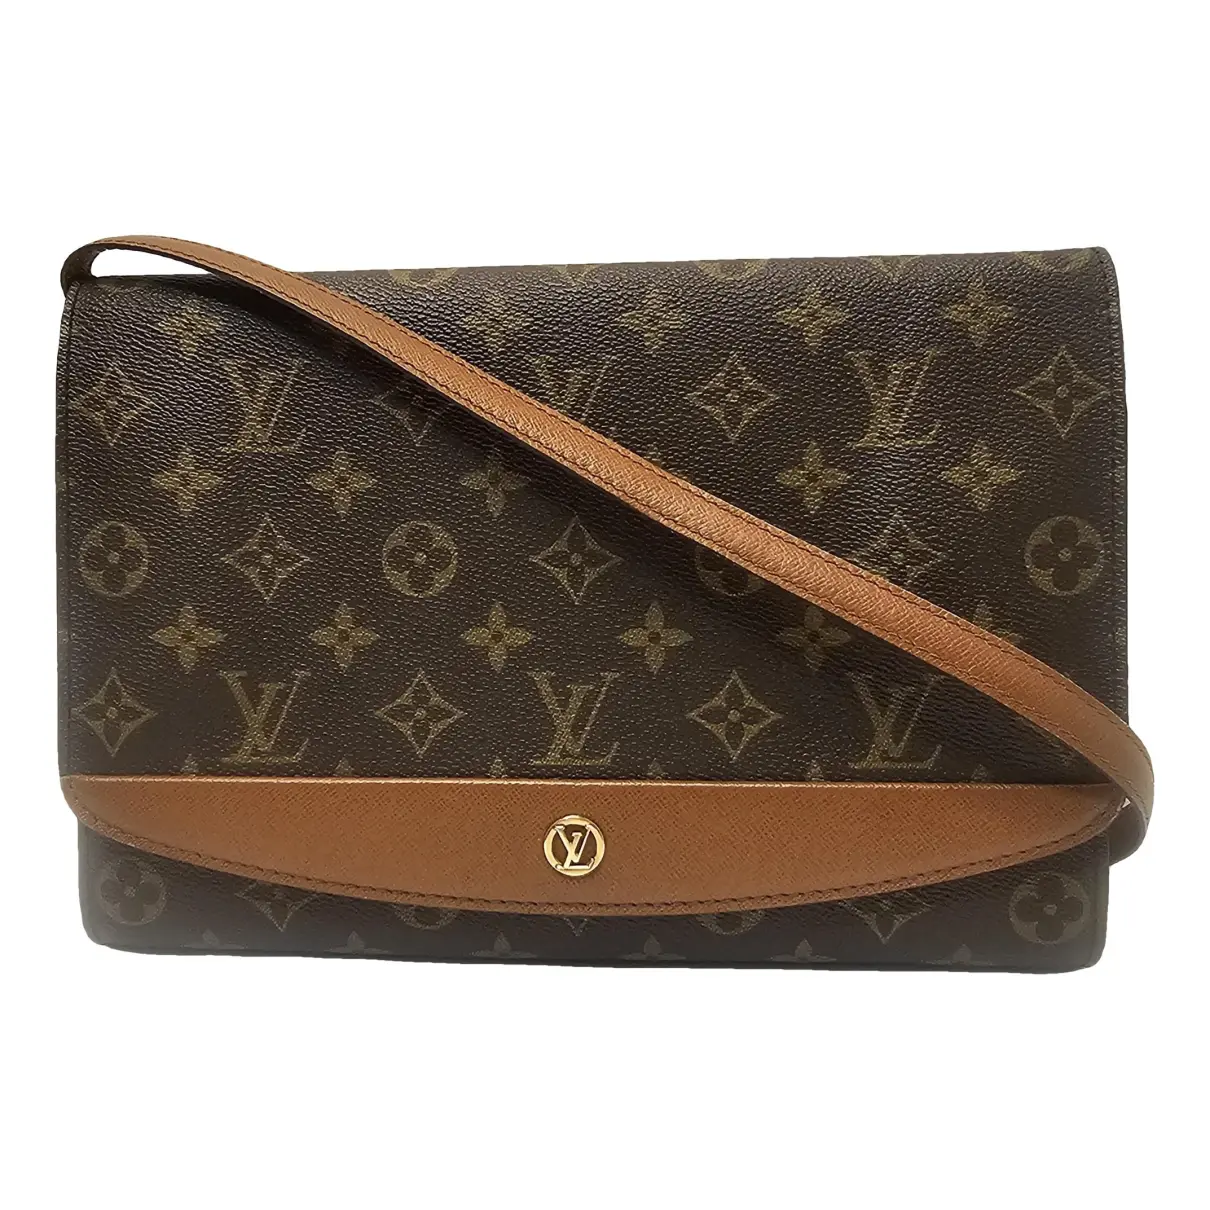 Bordeaux leather handbag Louis Vuitton